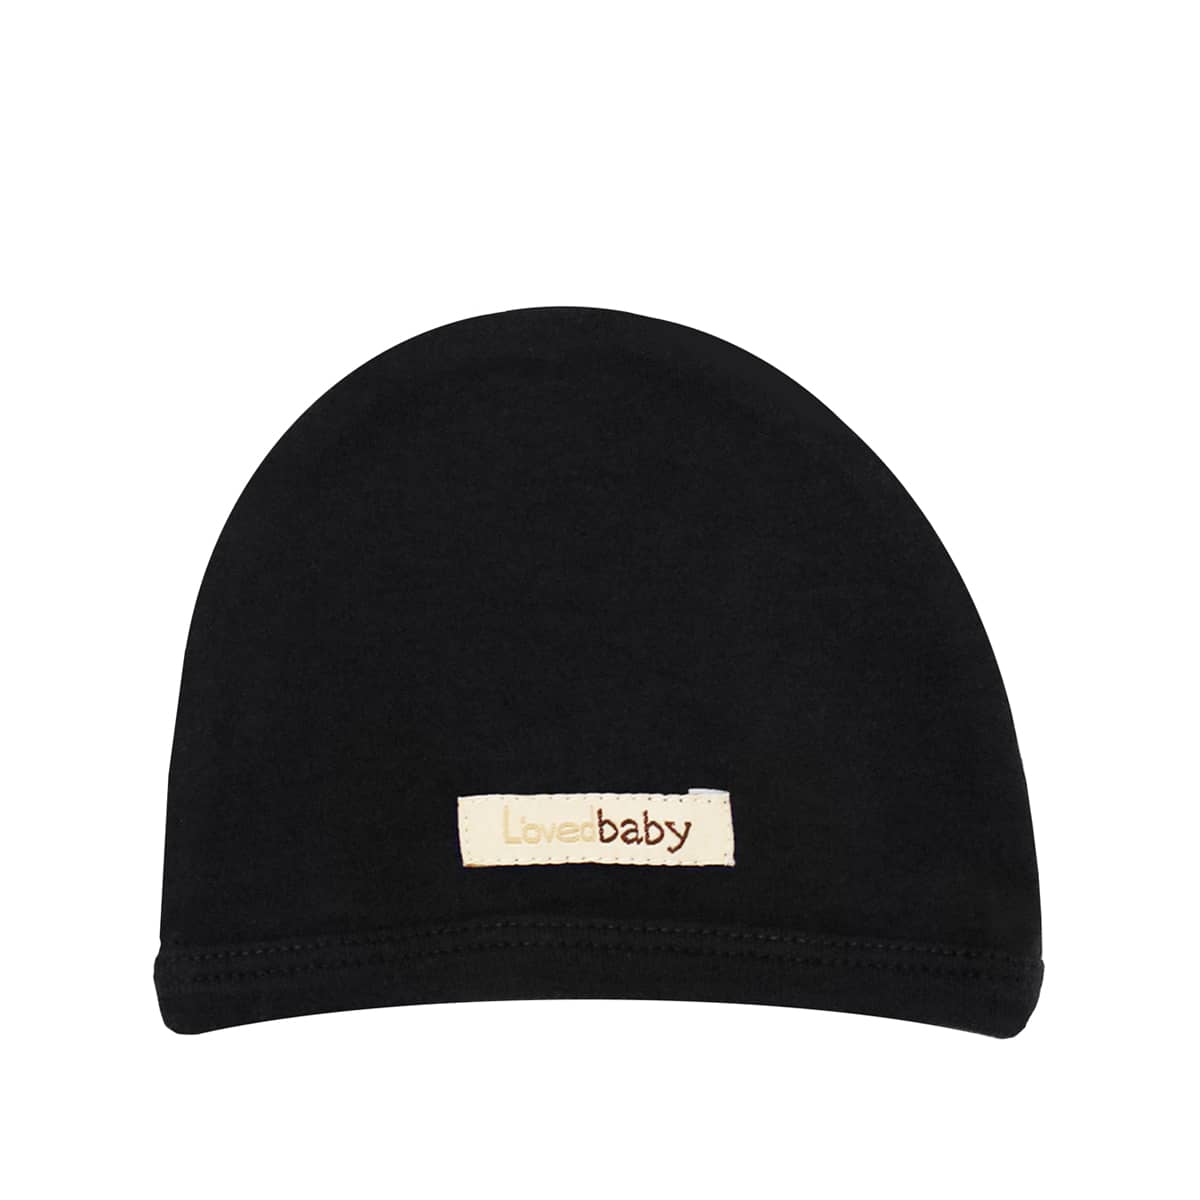 L'ovedbaby Organic Cute Cap - Black